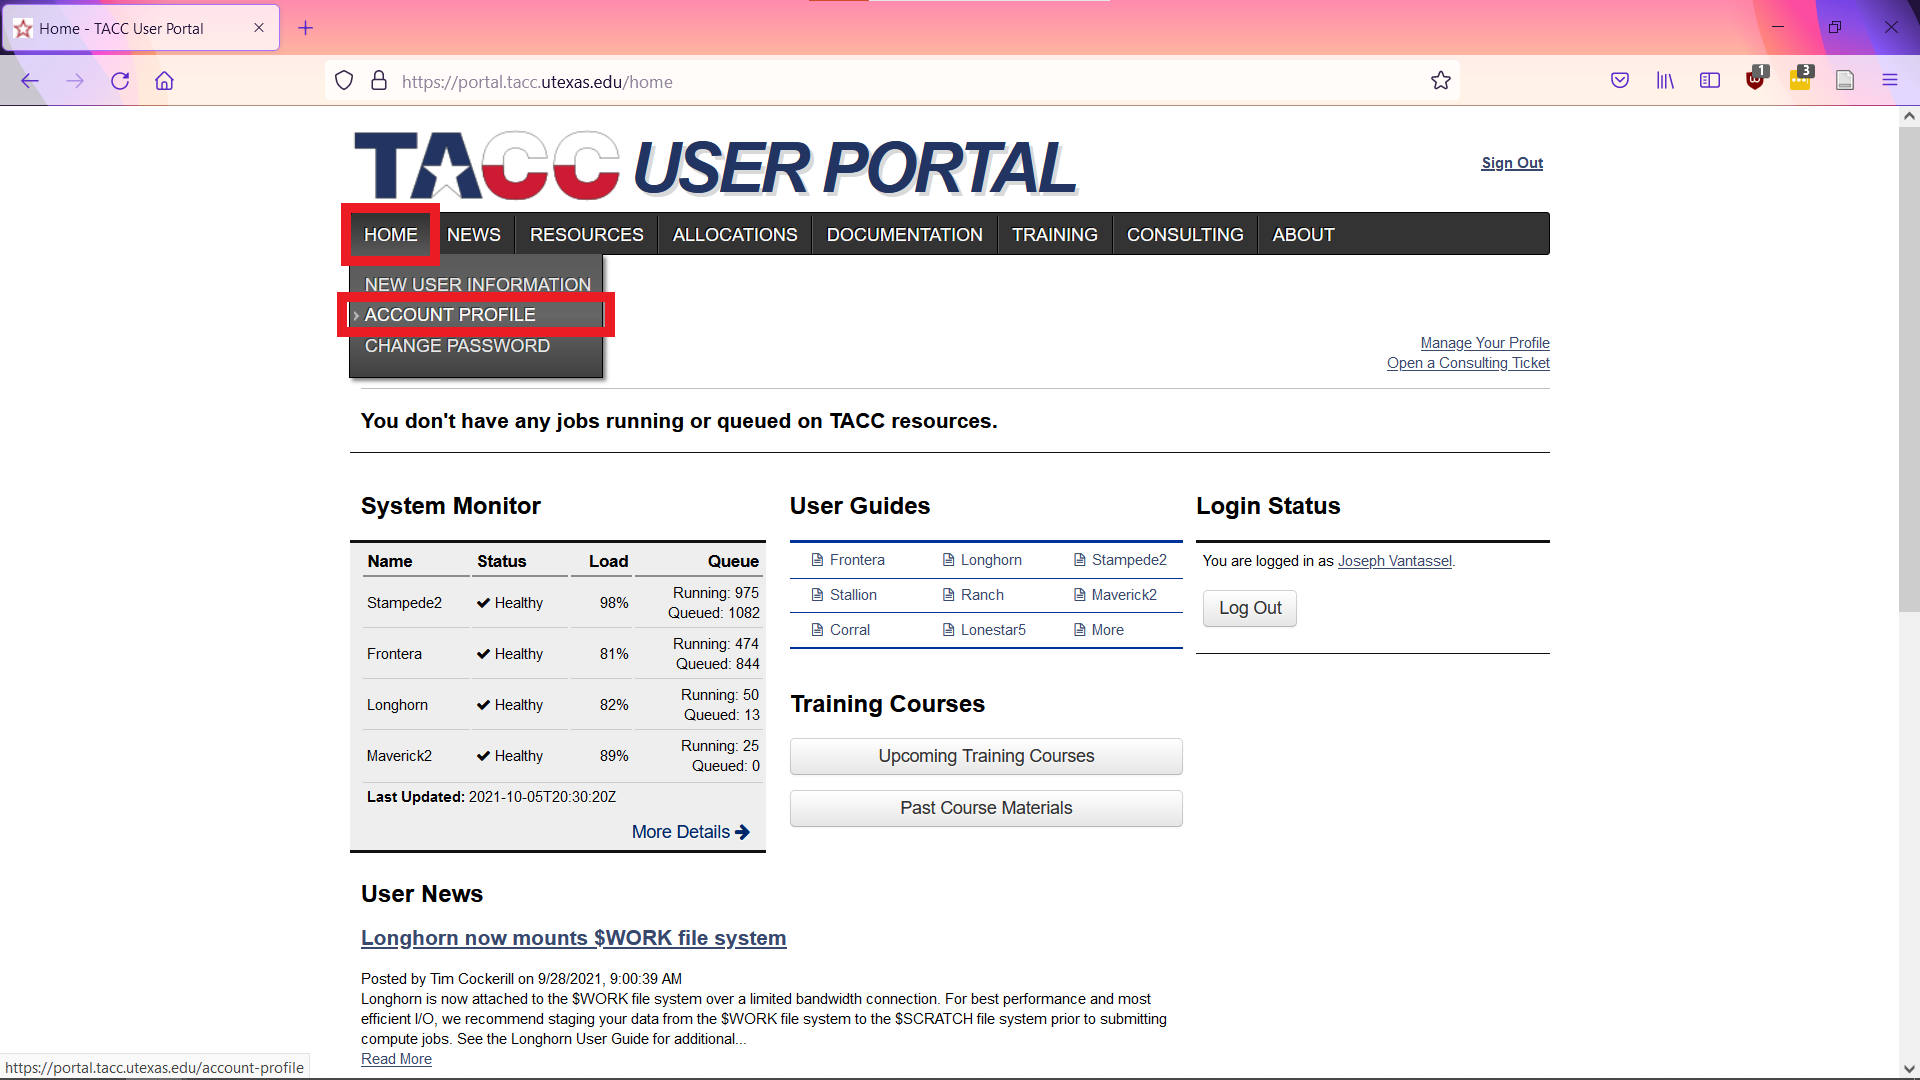 TACC User Portal